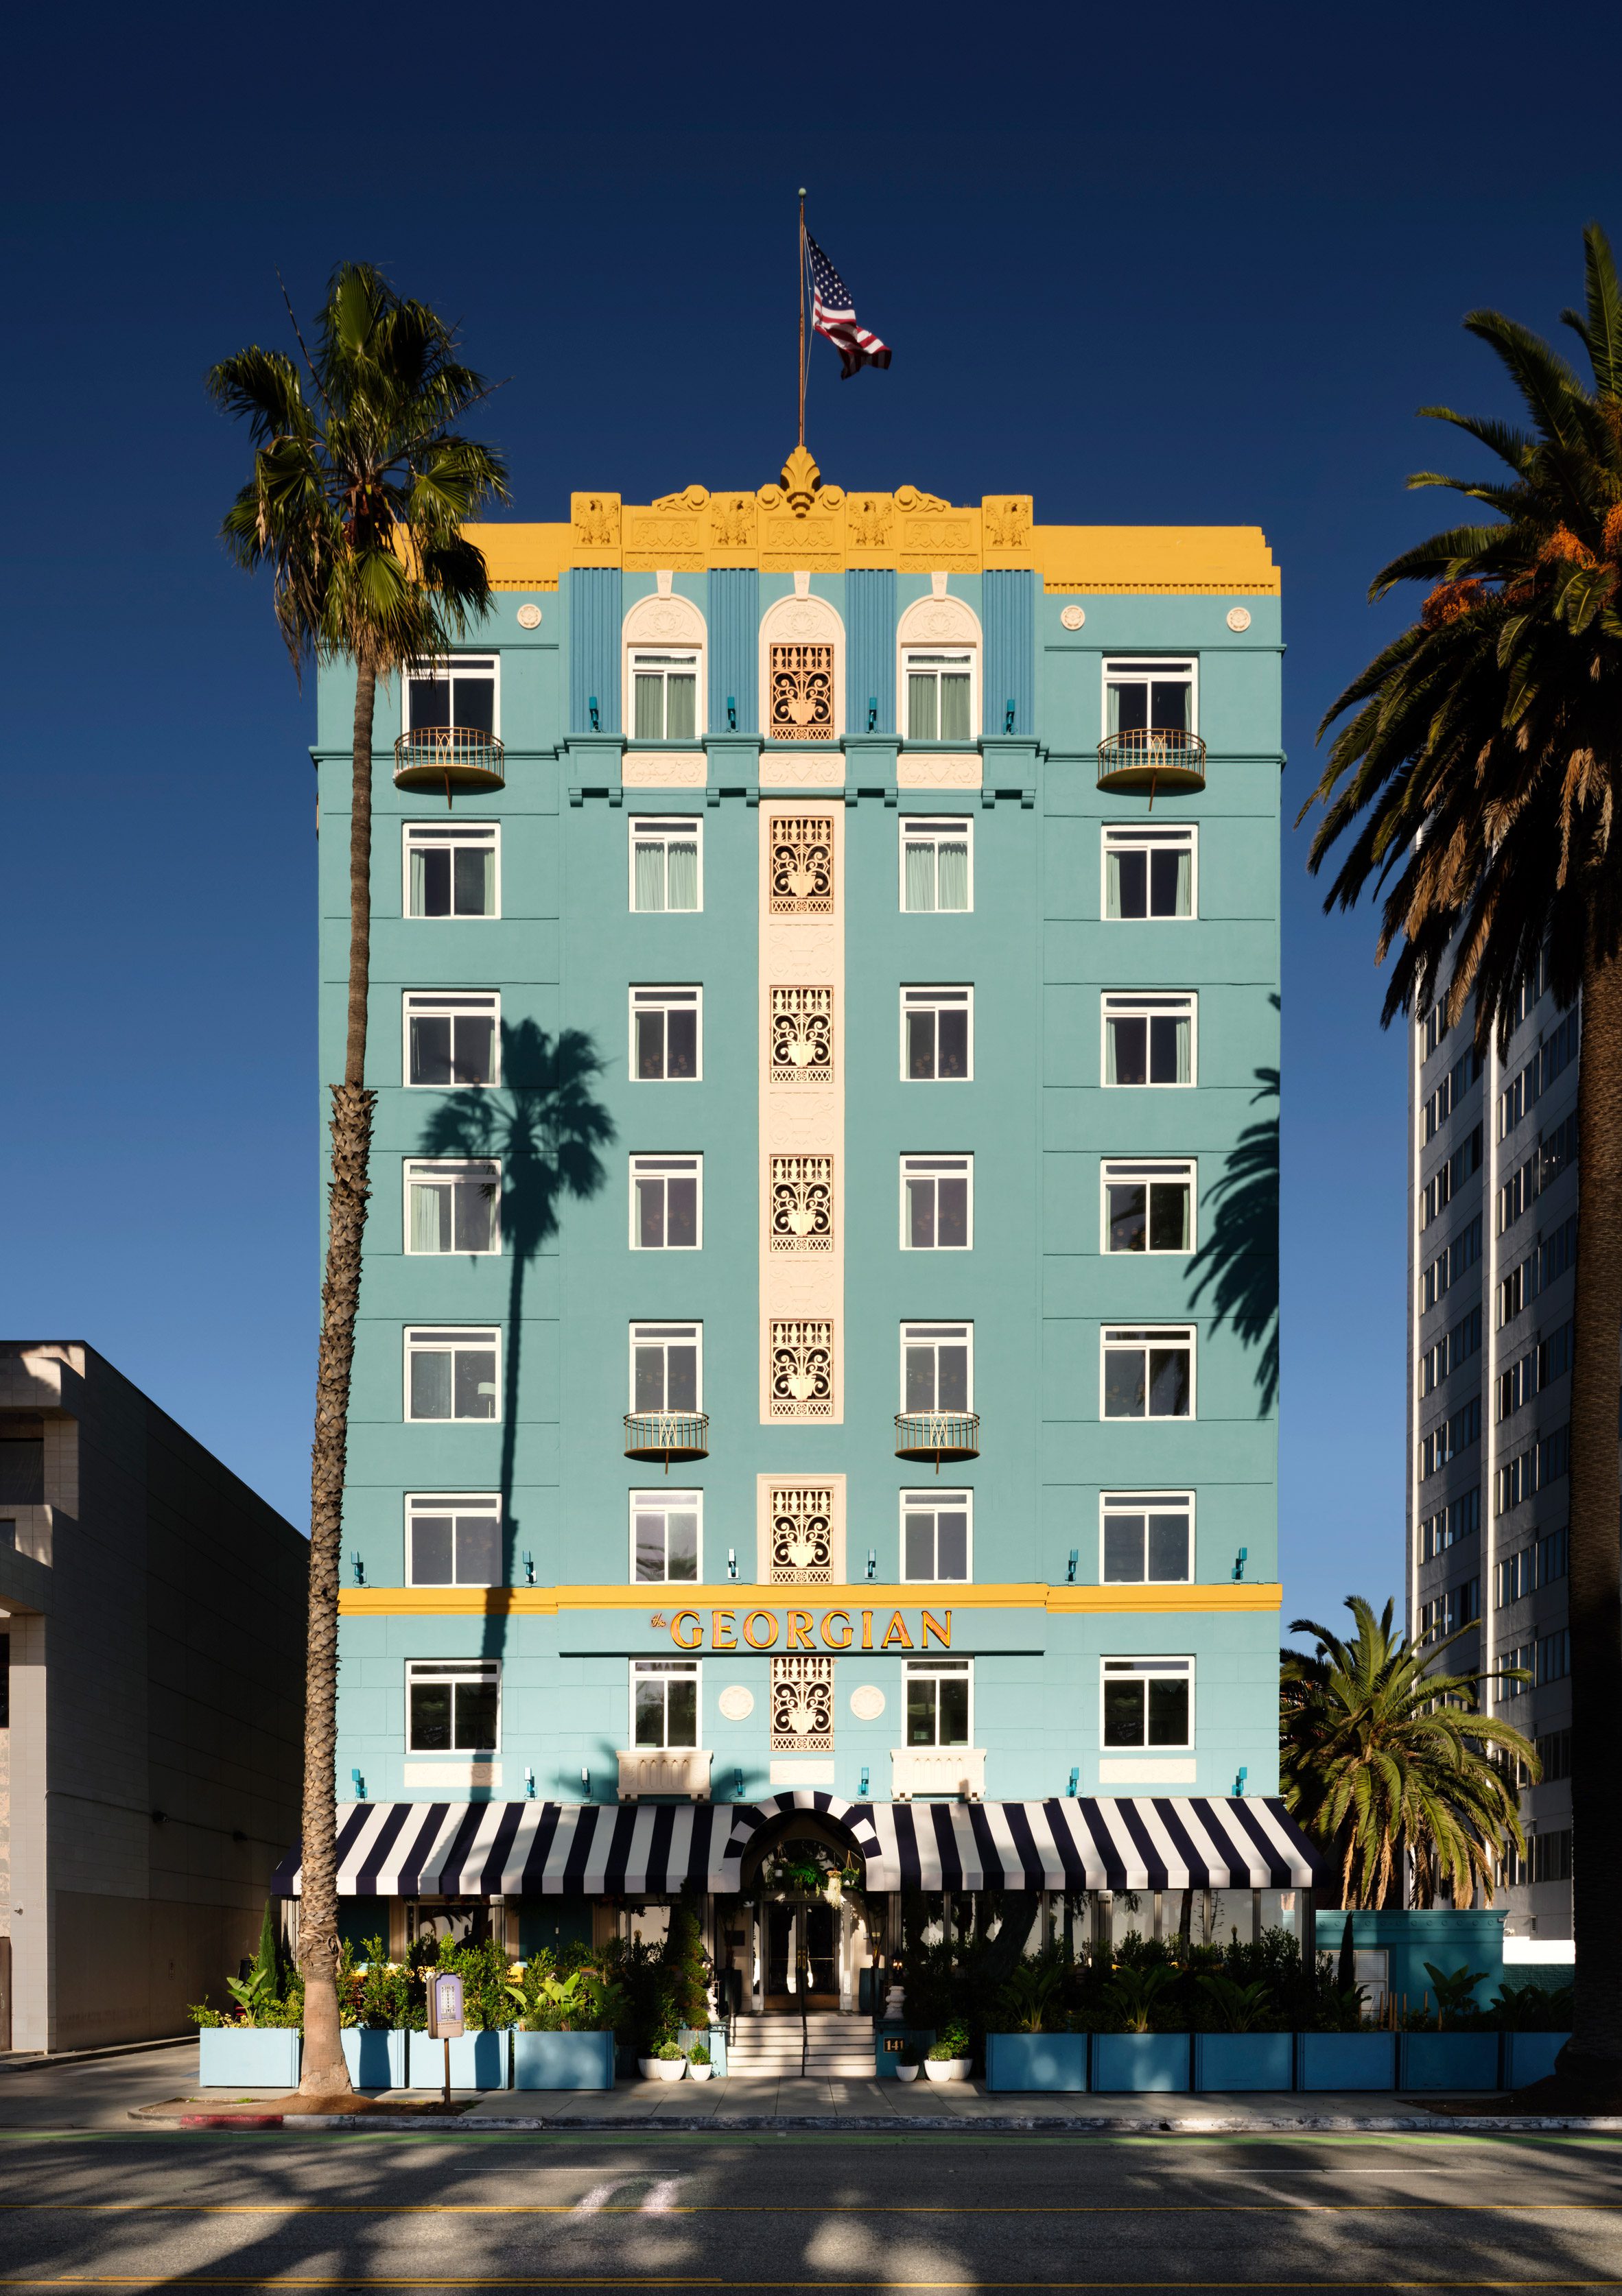 费特尔让圣莫尼卡的乔治亚酒店重现20世纪30年代的“辉煌”|ART-Arrakis | 建筑室内设计的创新与灵感